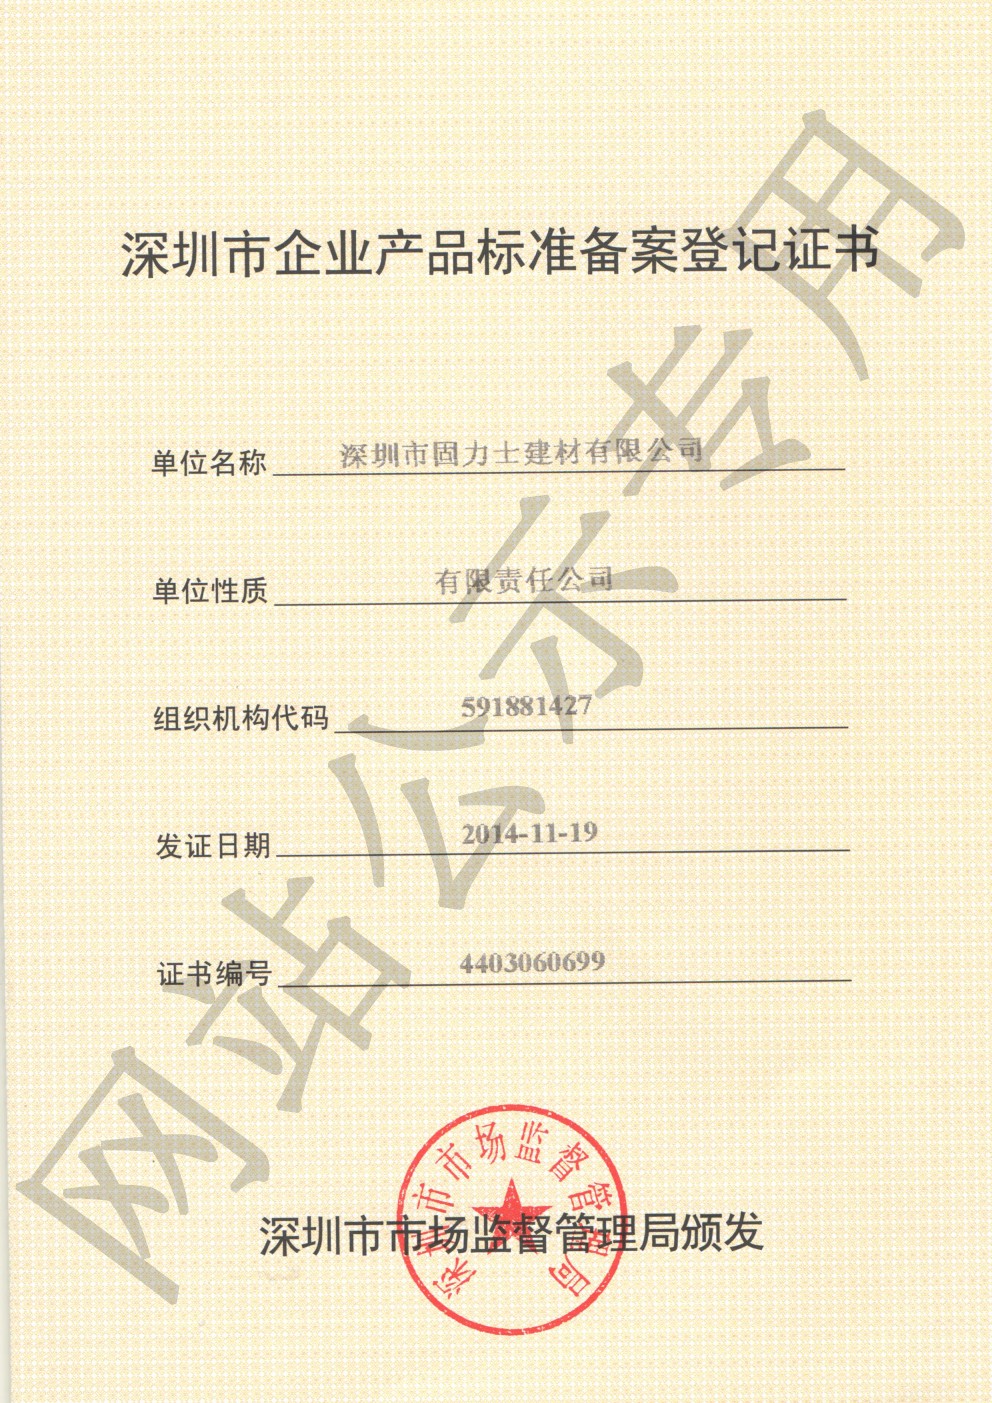 玉龙企业产品标准登记证书